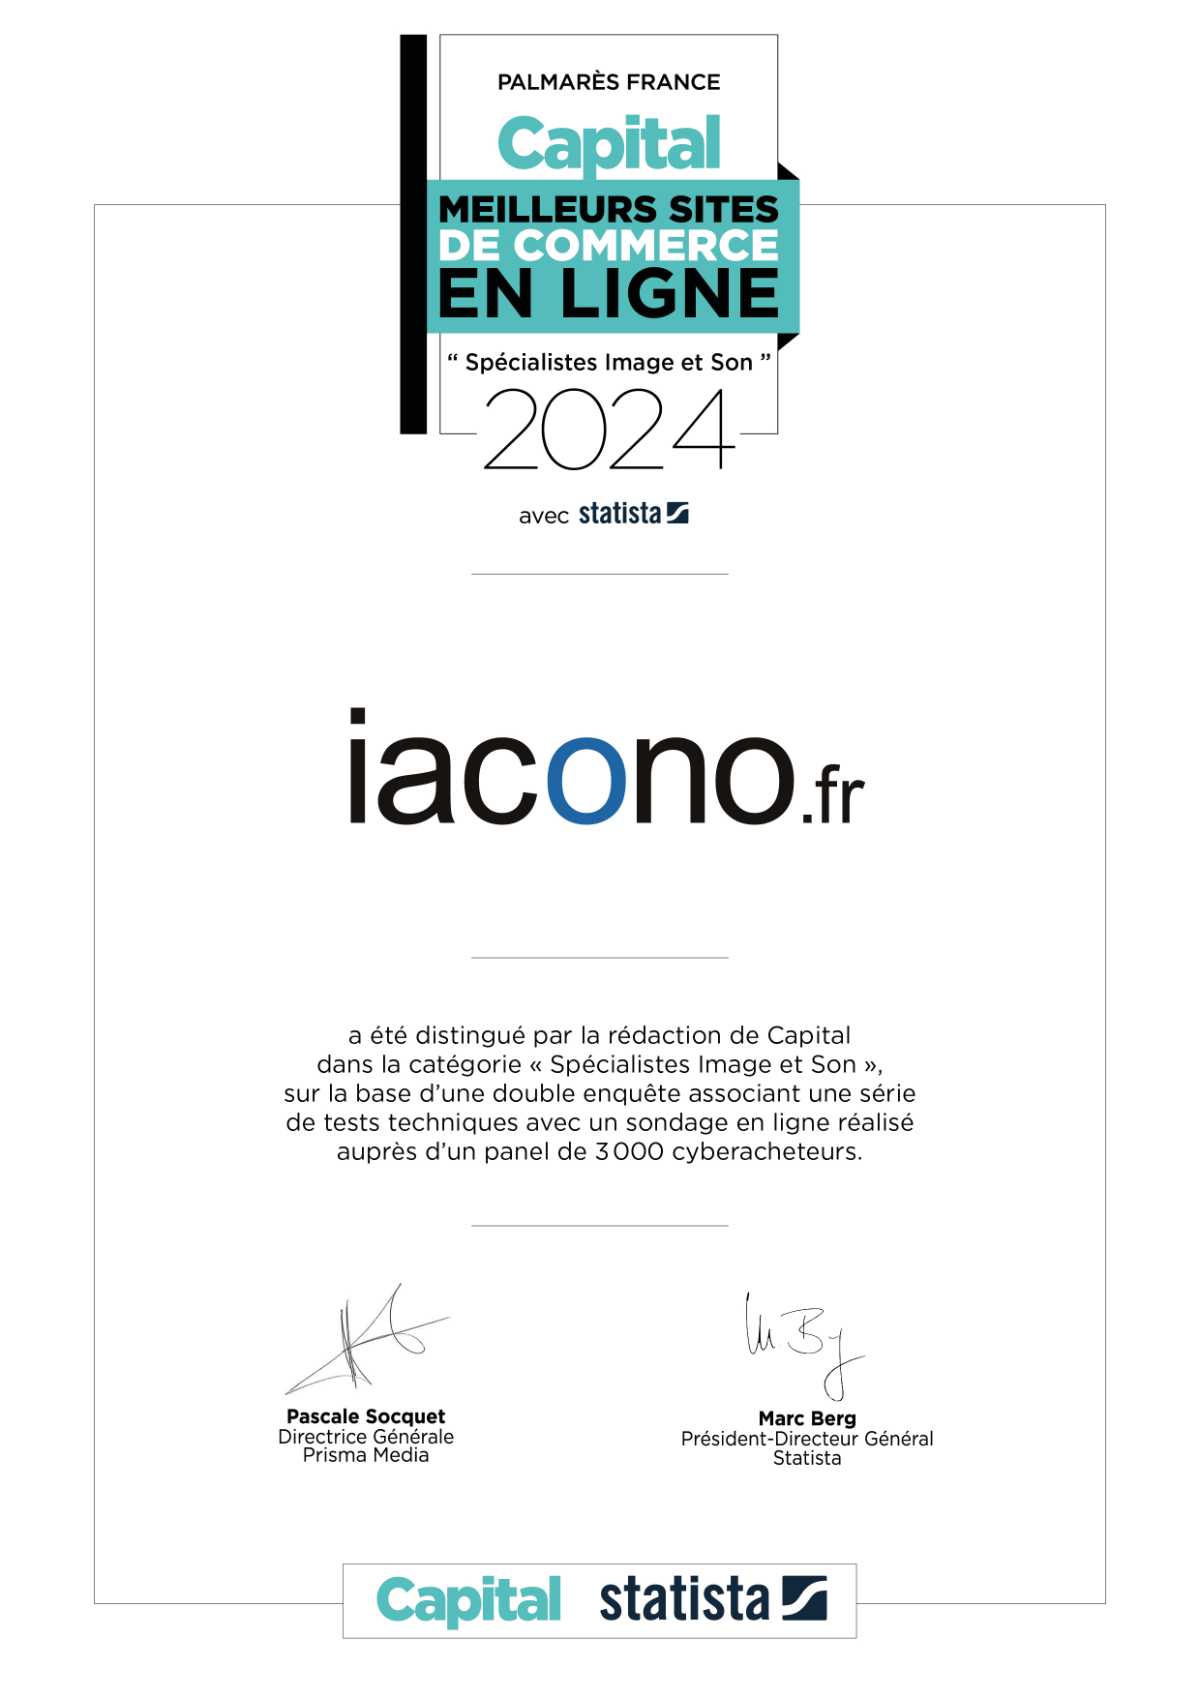 Certificat Capital - Meilleurs sites de commerce en ligne - iacono.fr